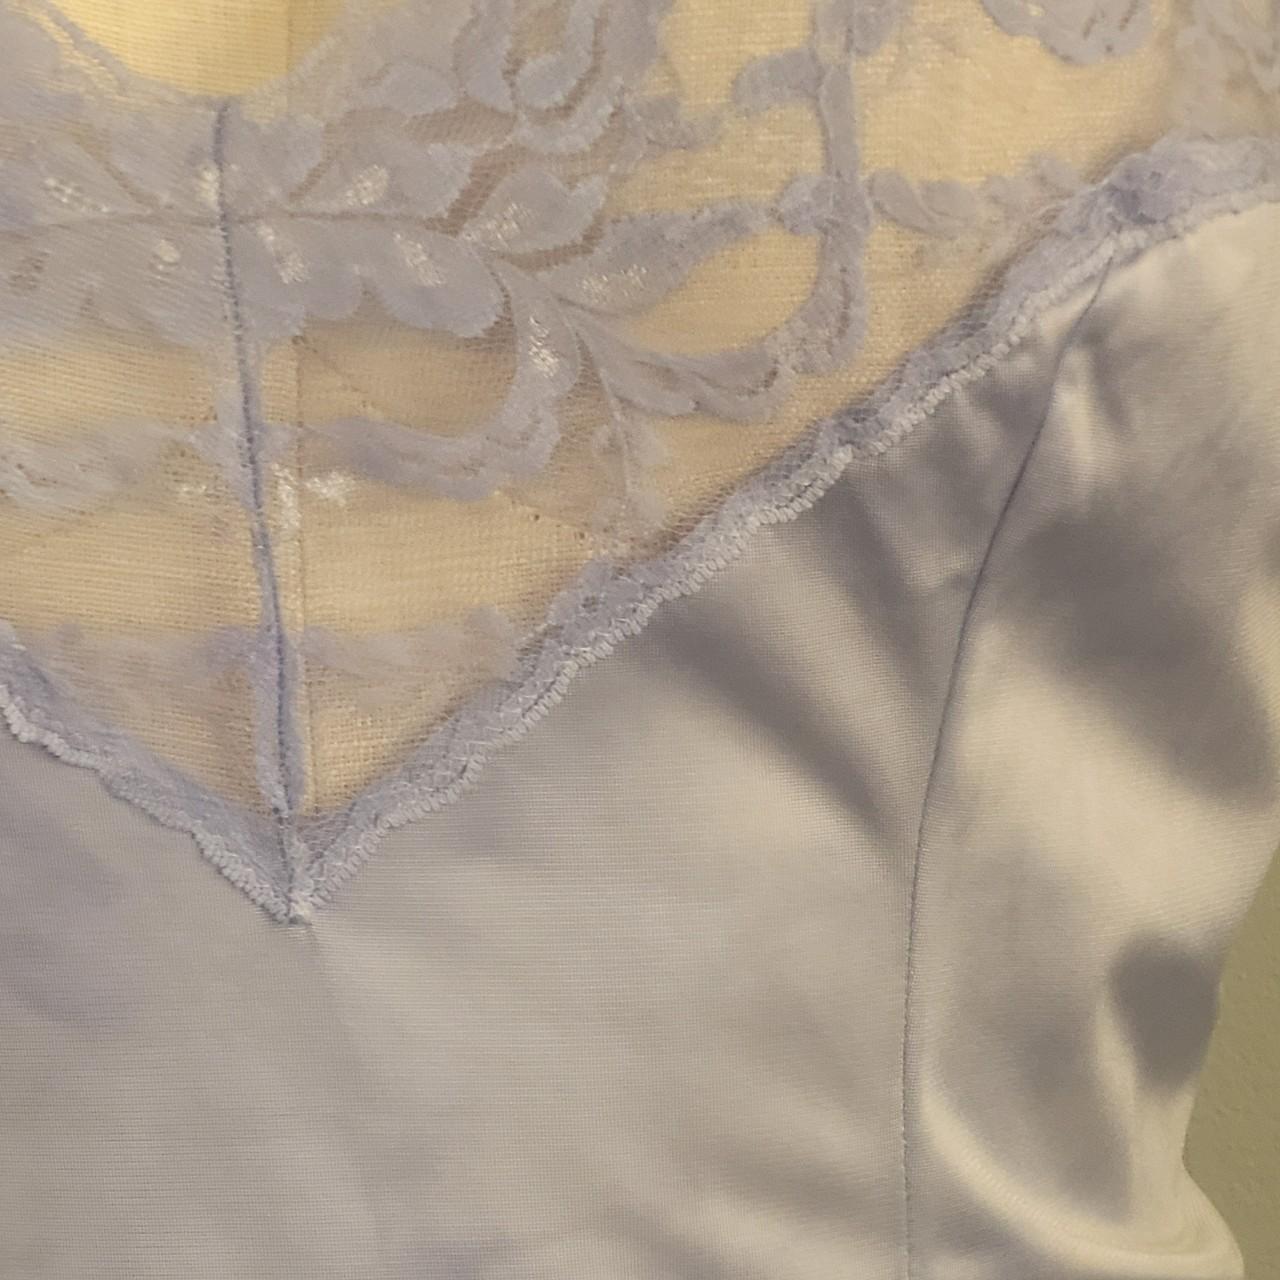 Vassarette Vintage Camisole Lace Satin Lingerie - Depop